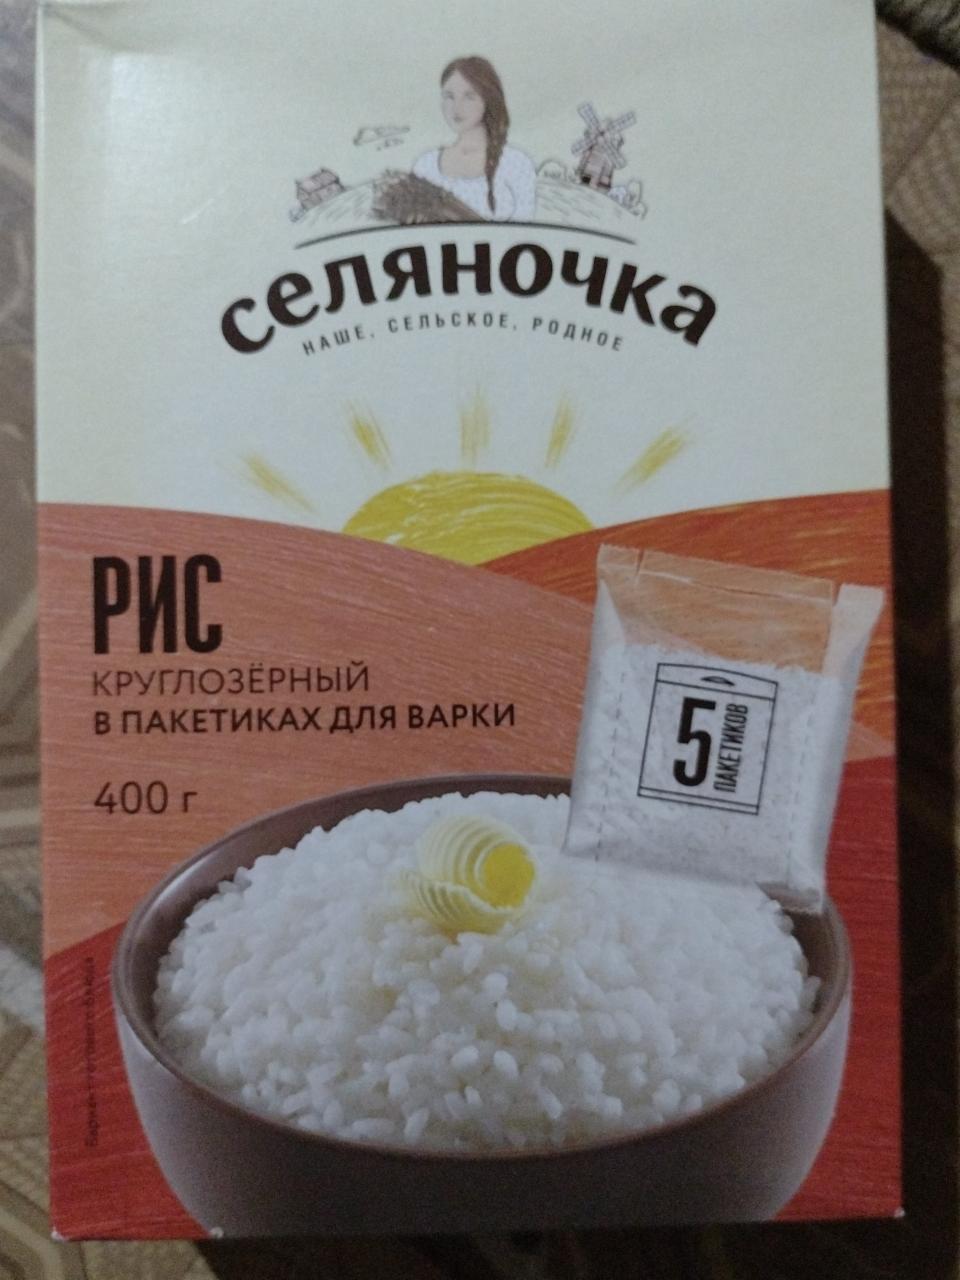 Фото - рис круглозерный в пакетиках для варки Селяночка